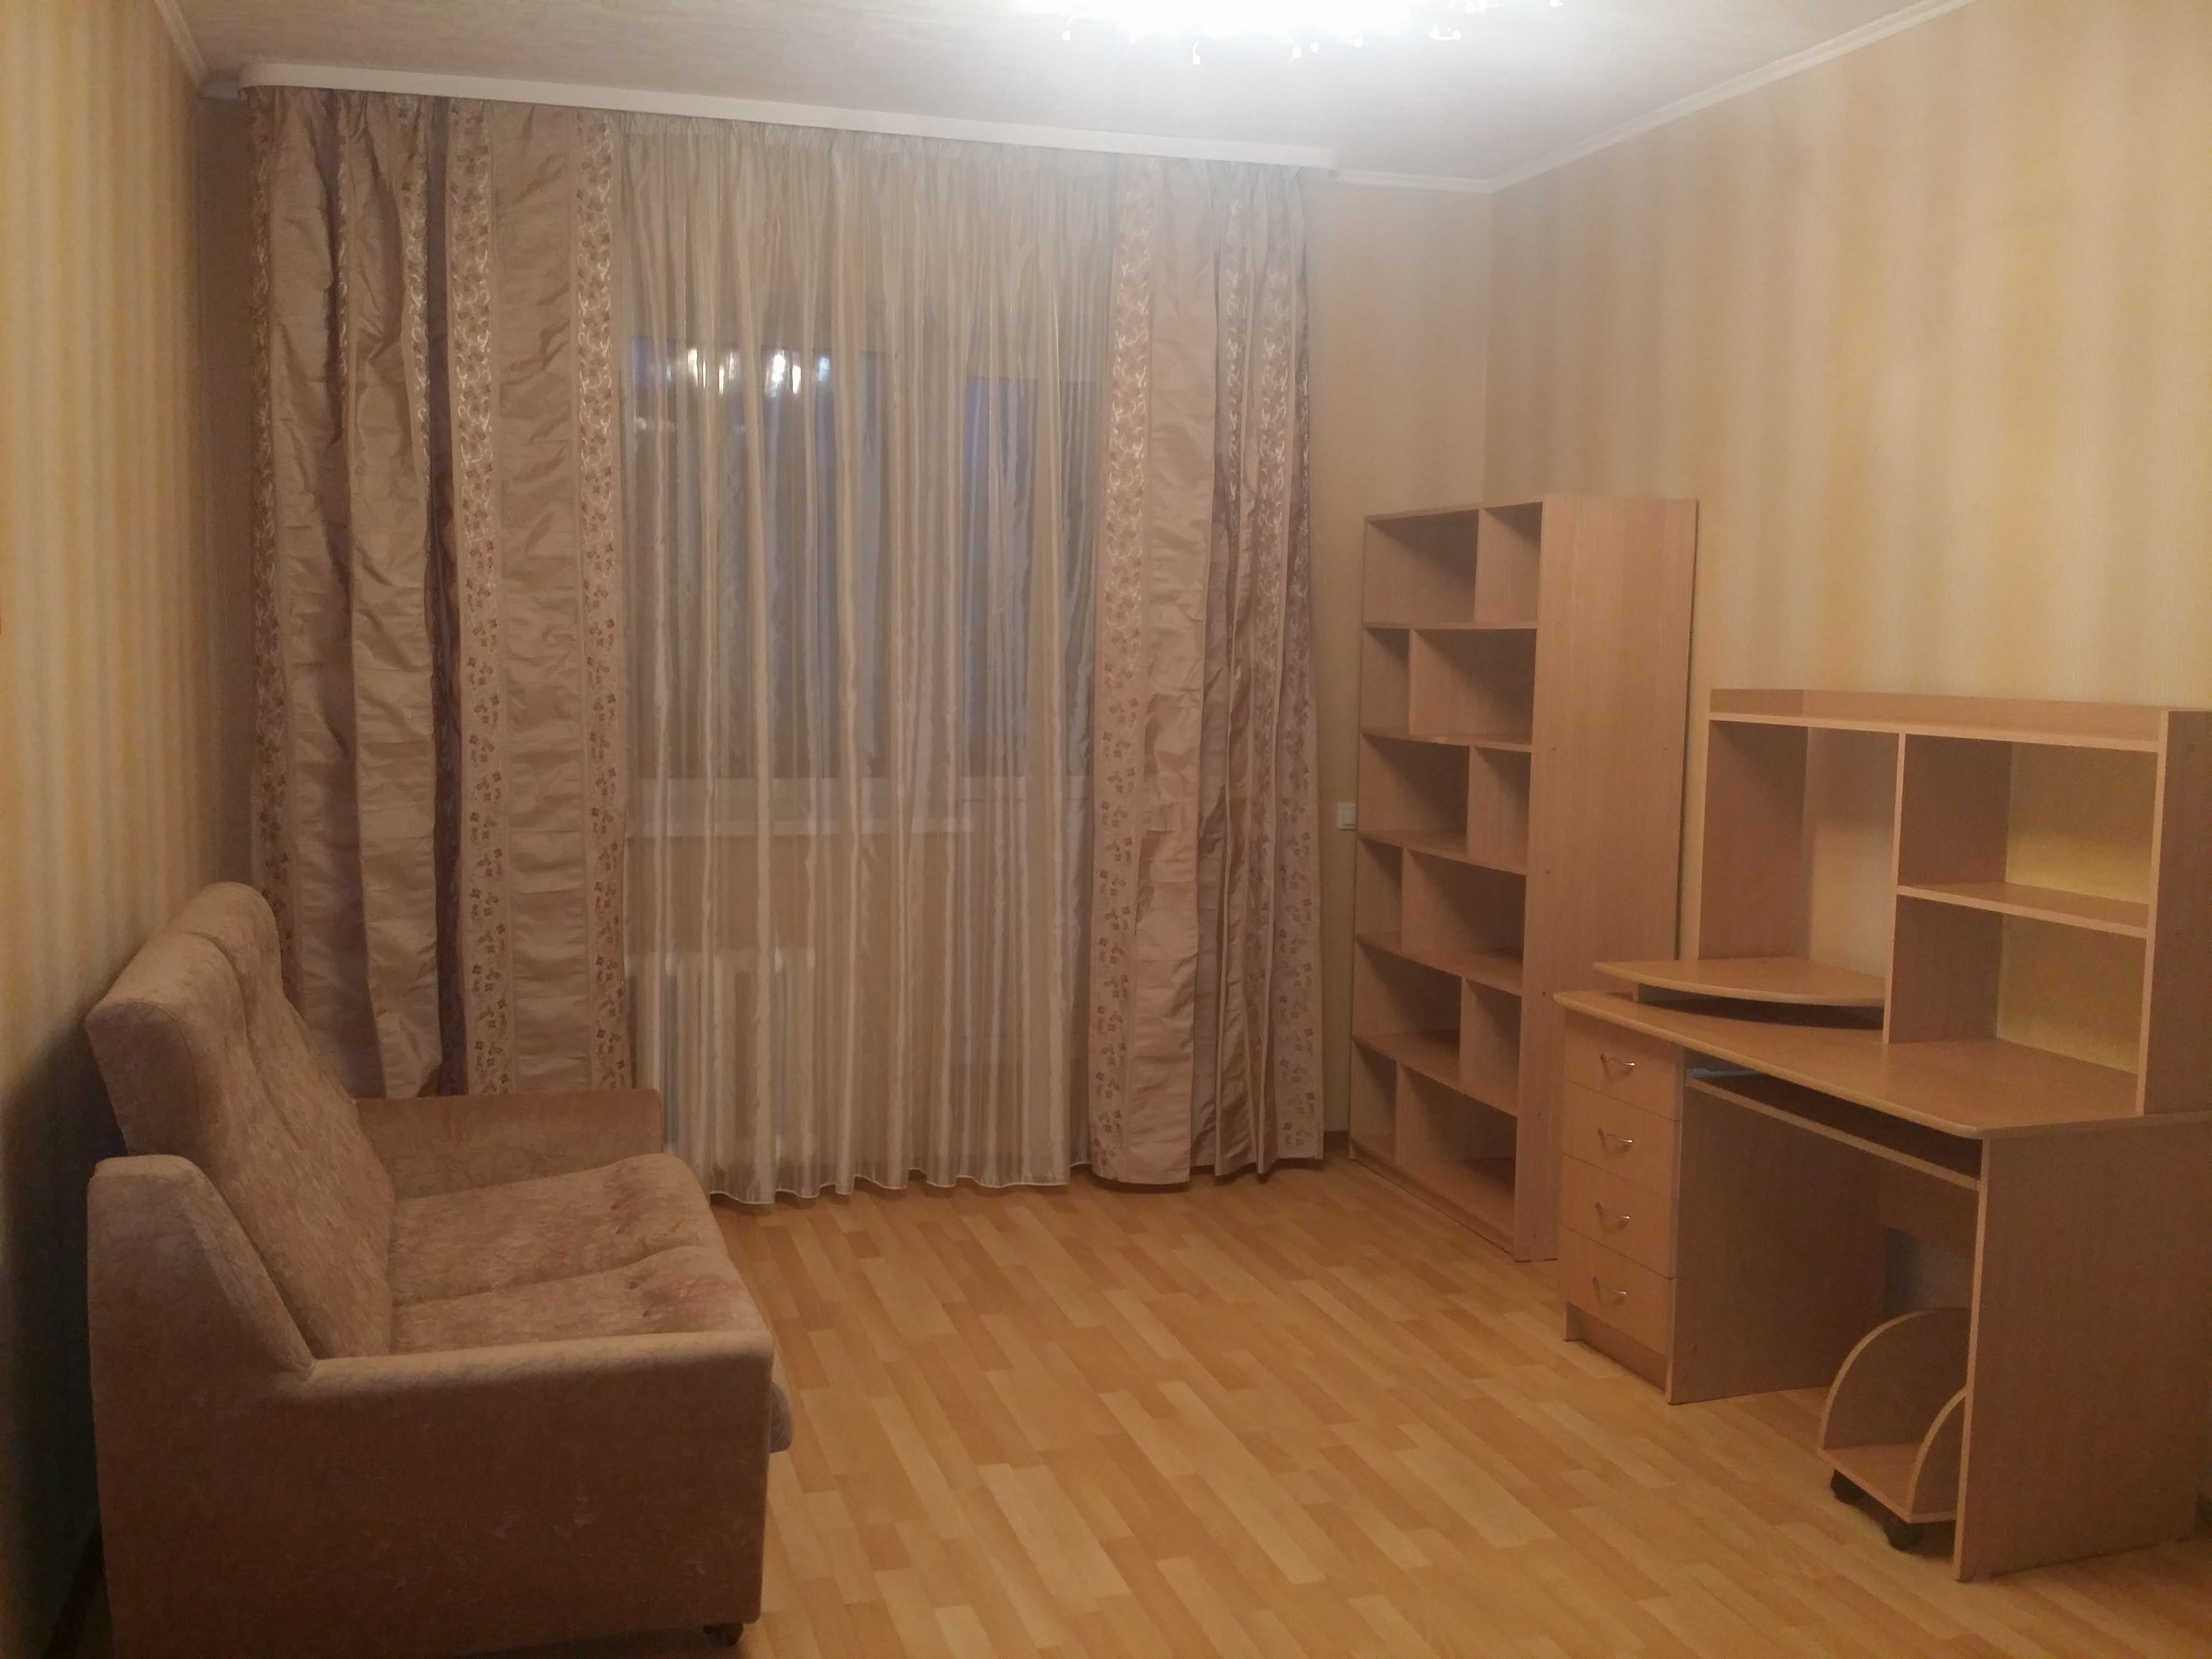 Купить 1 комнатную в ульяновске недорого. Однокомнатные квартиры в Железнодорожном районе города Ульяновска.